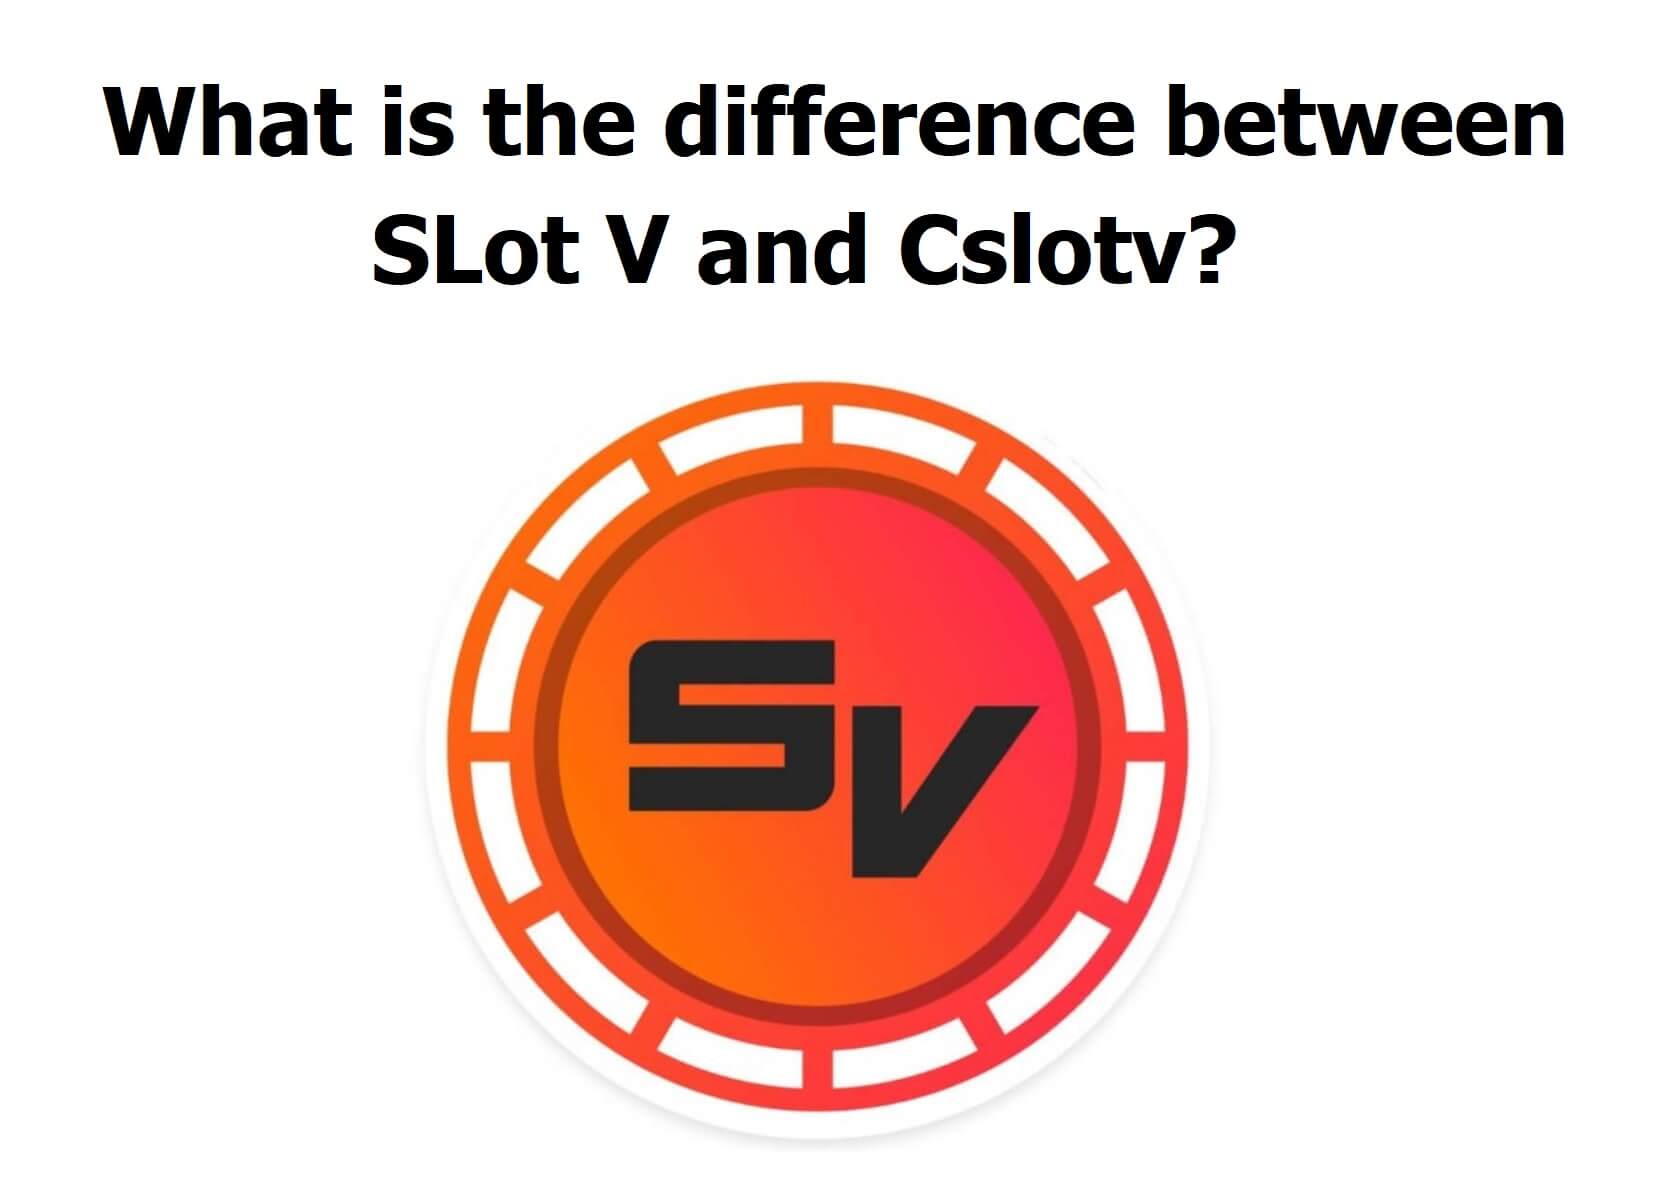 Slot V and Cslotv